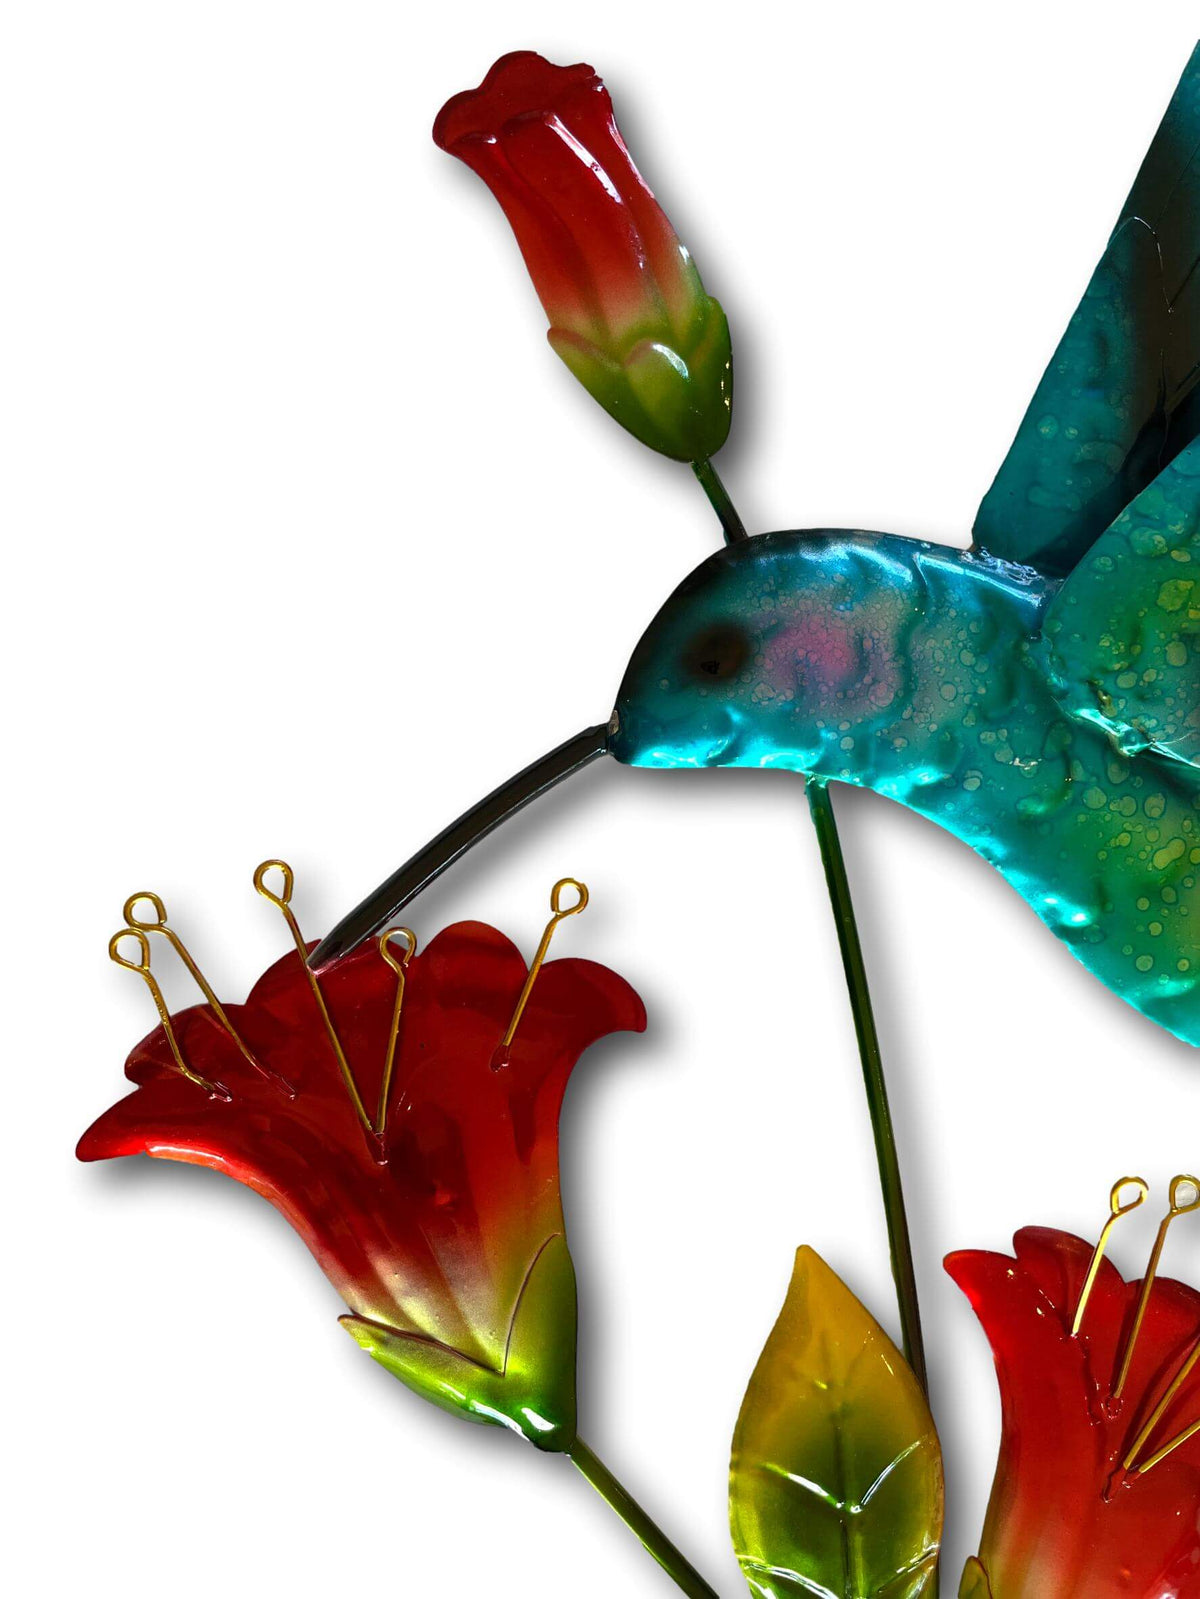 Colourful Flying Hummingbird Wall Art - Handmade Metal Art